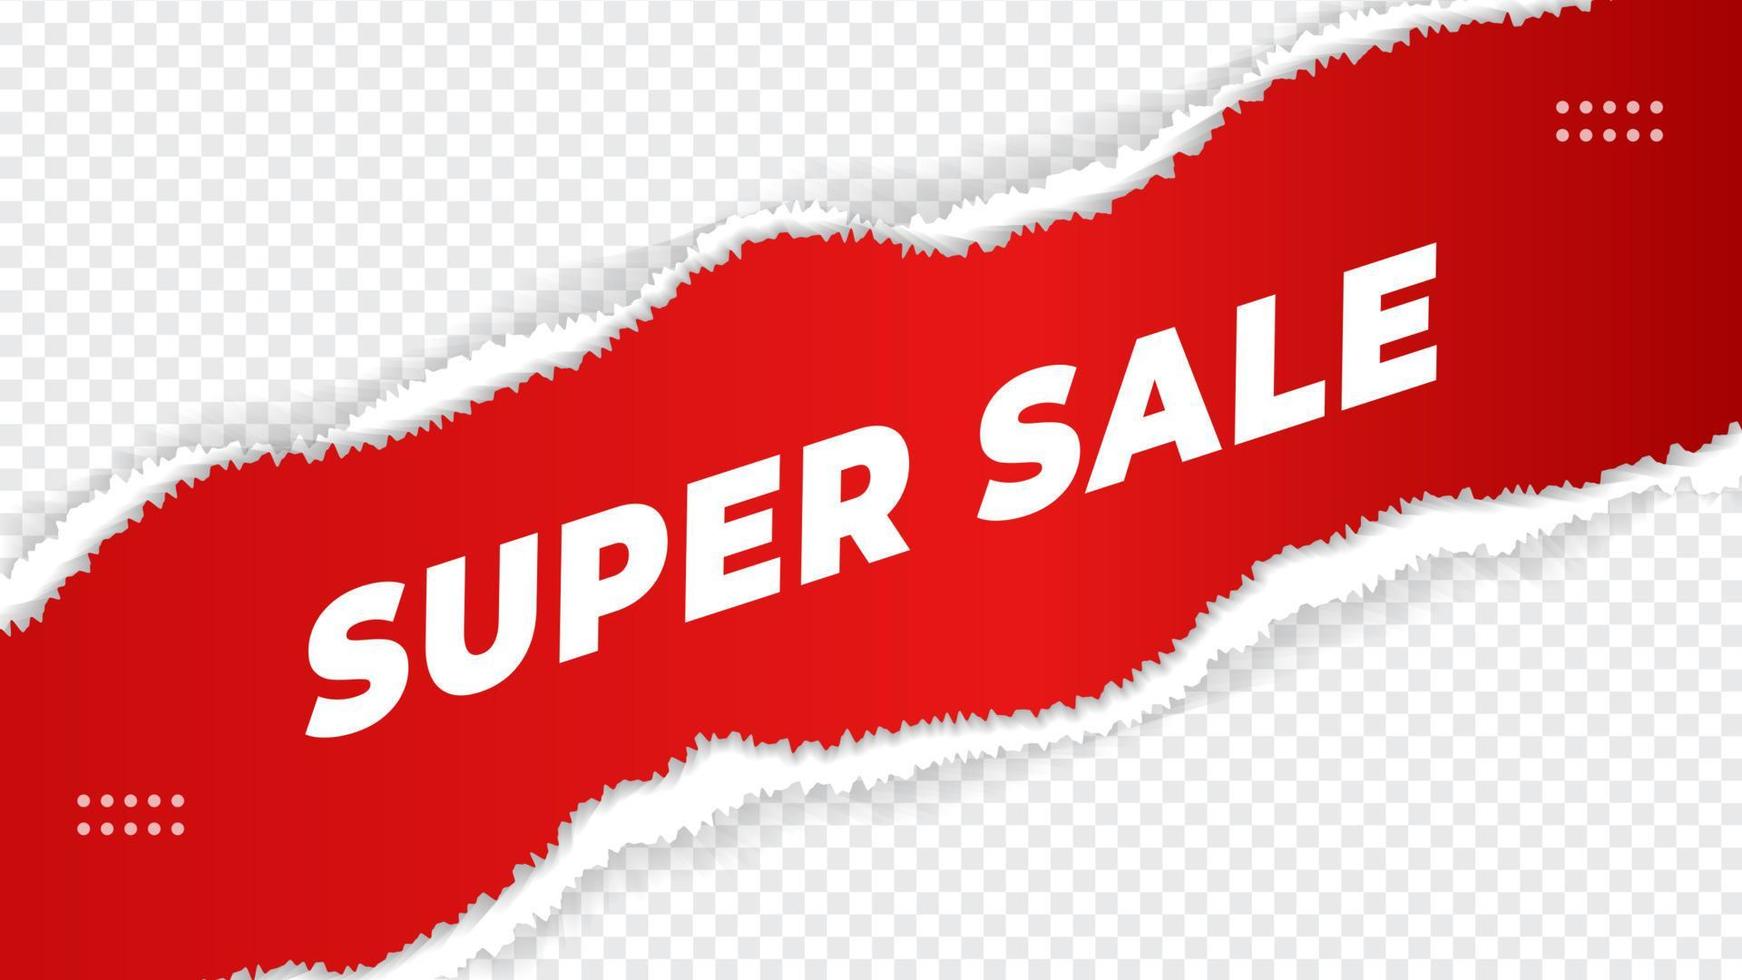 Super sale banner, special offer, hot sale, big sale design template on transparent background vector